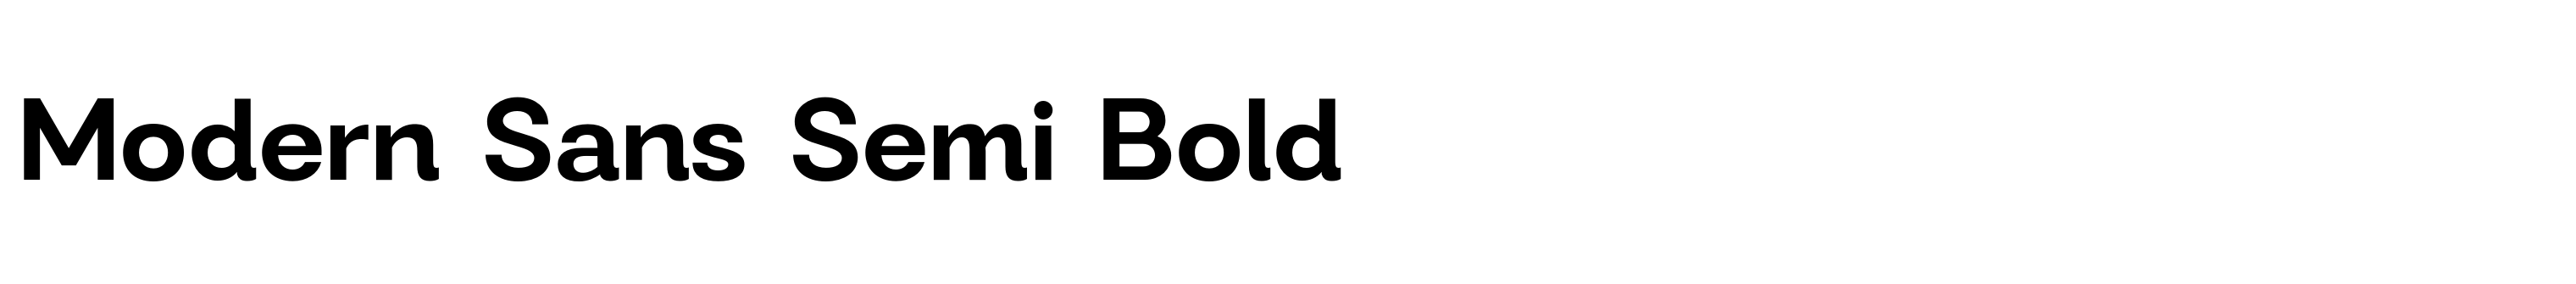 Modern Sans Semi Bold